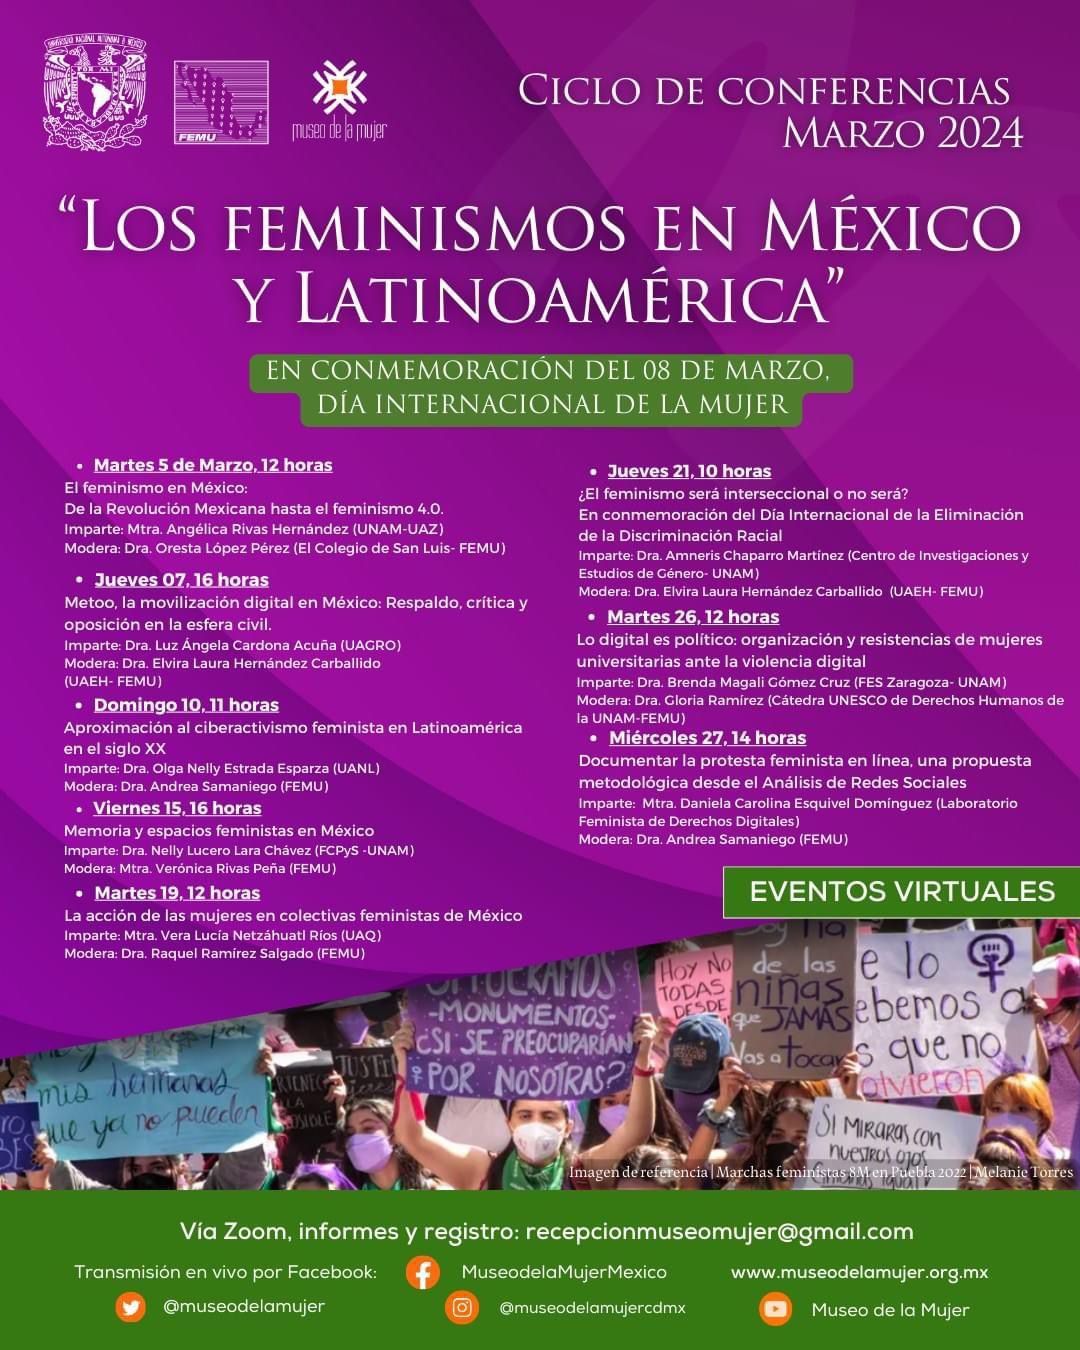 Invita Museo de la Mujer a participar en su ciclo de conferencias sobre Feminismos en México y Latinoamérica